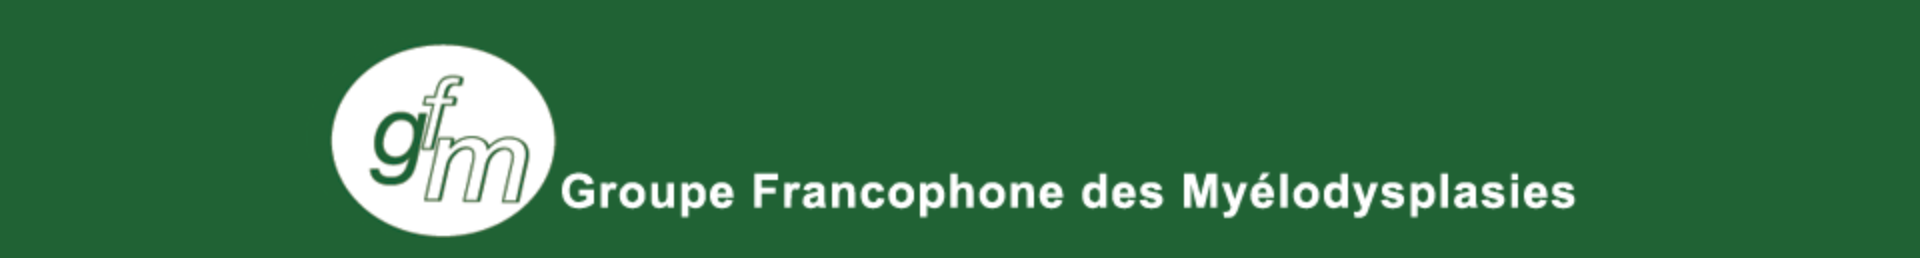 13èmes journées virtuelles du Groupe Francophone des Myélodysplasies - GFM 2020